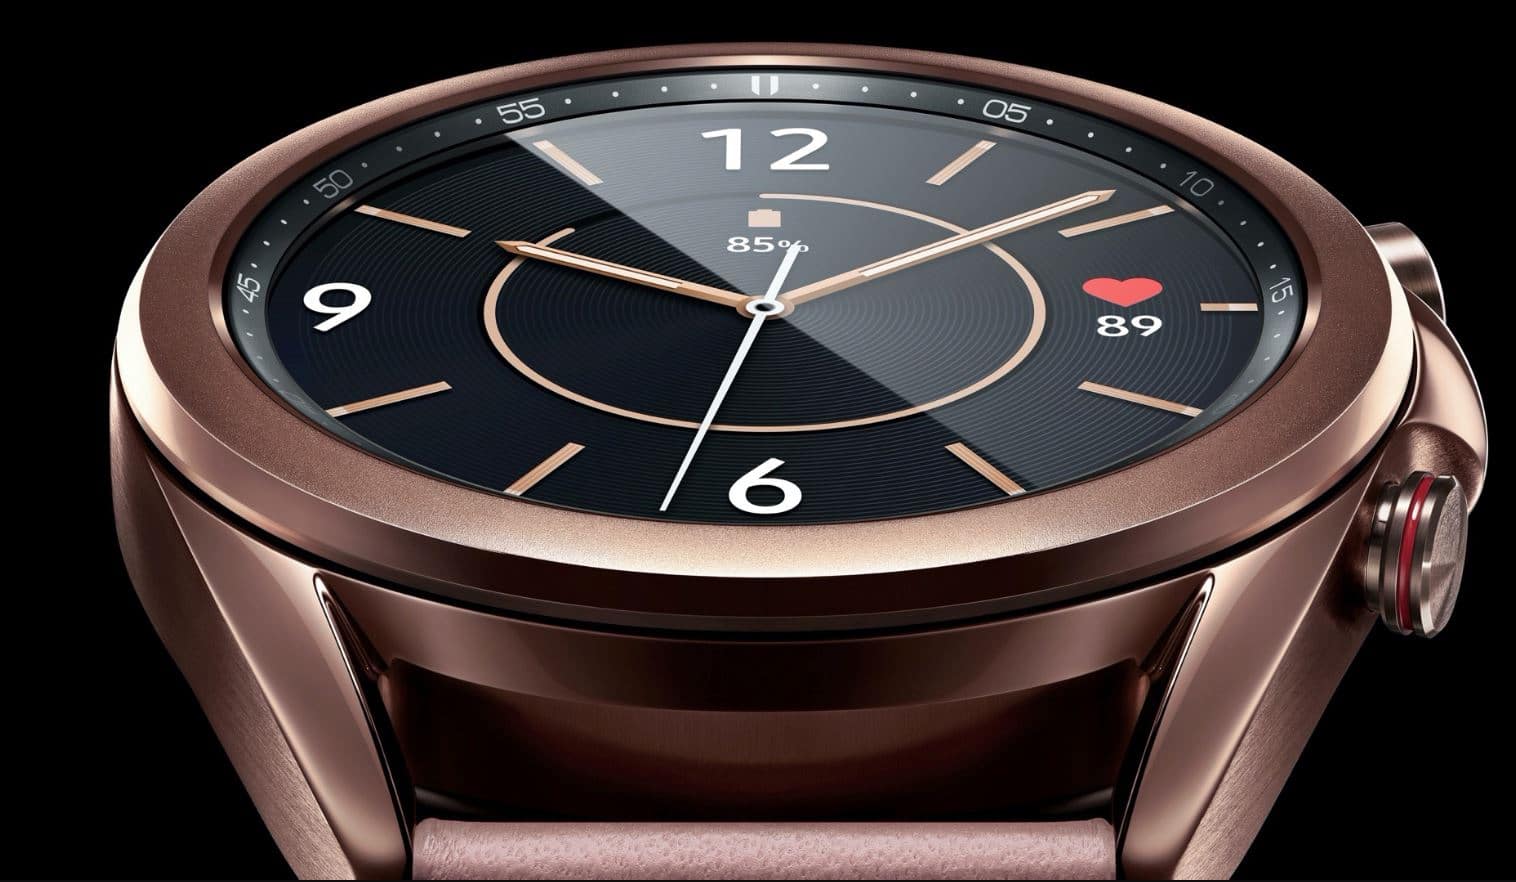 Deal Alert: Samsung Galaxy Watch 3 a full $100 off, only $379